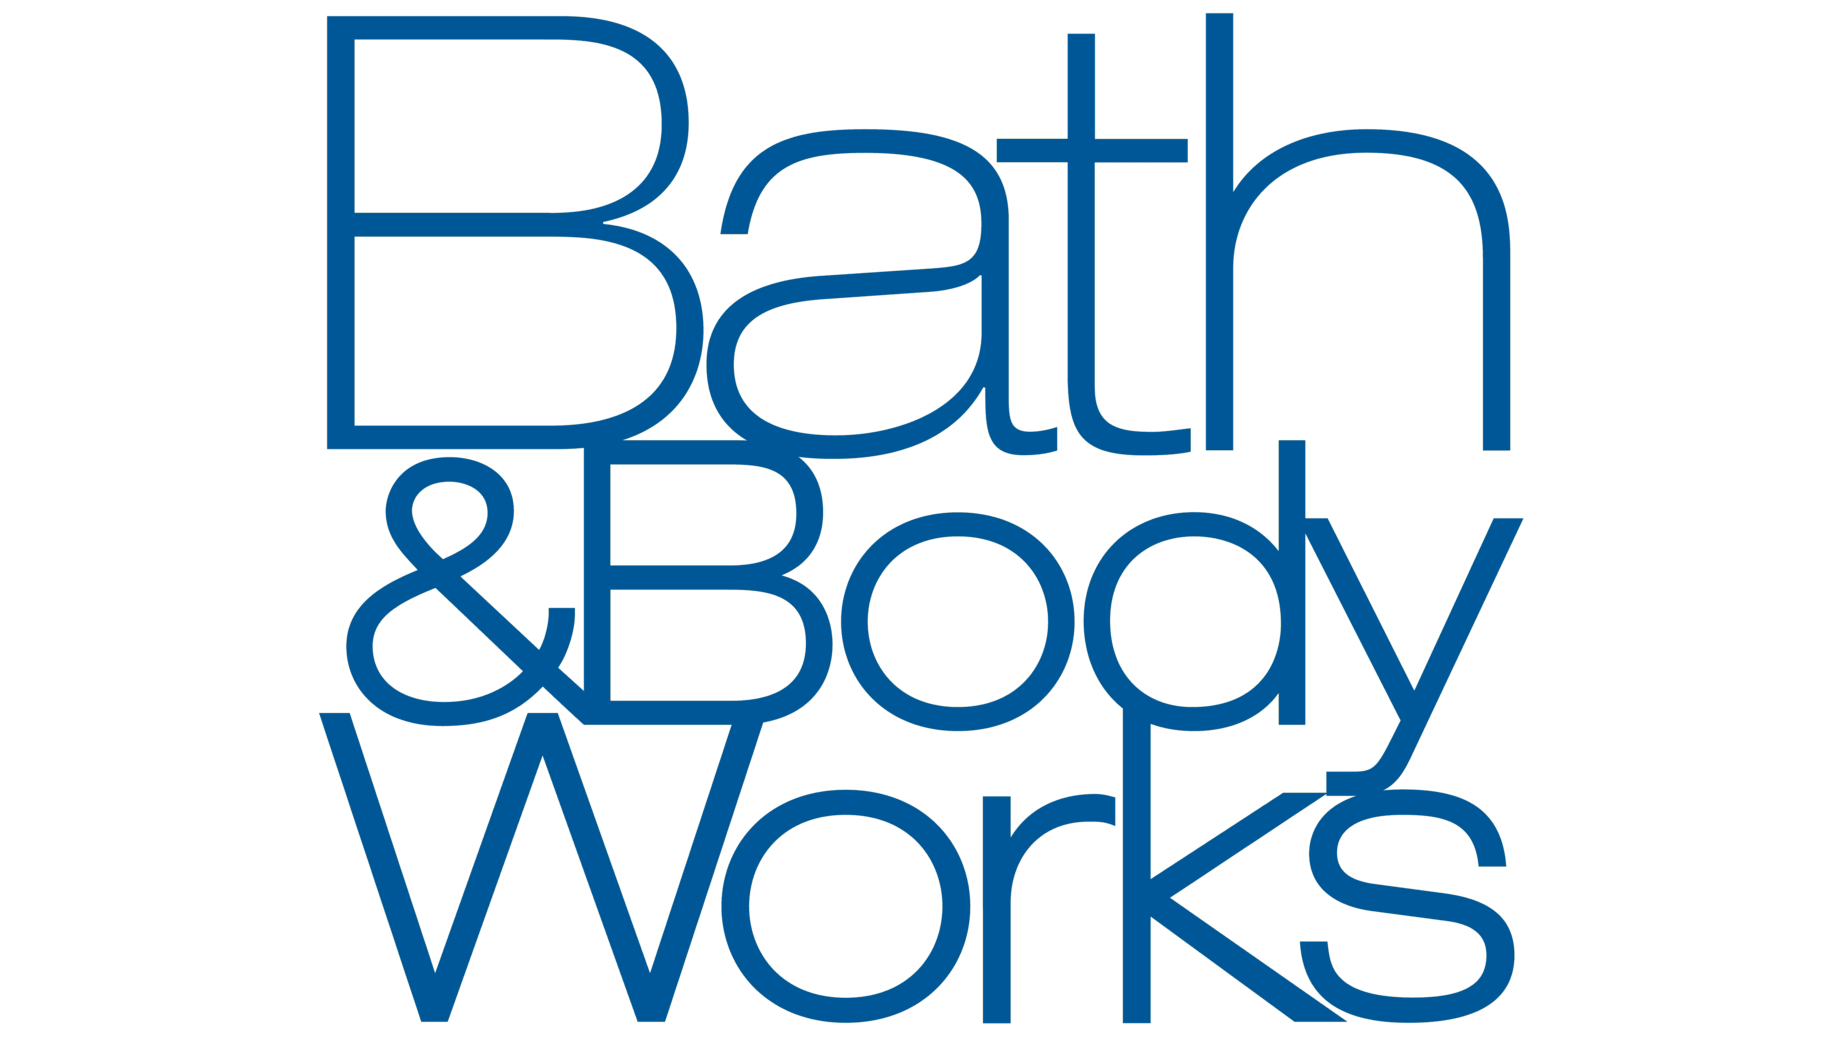 Bath body works symbol